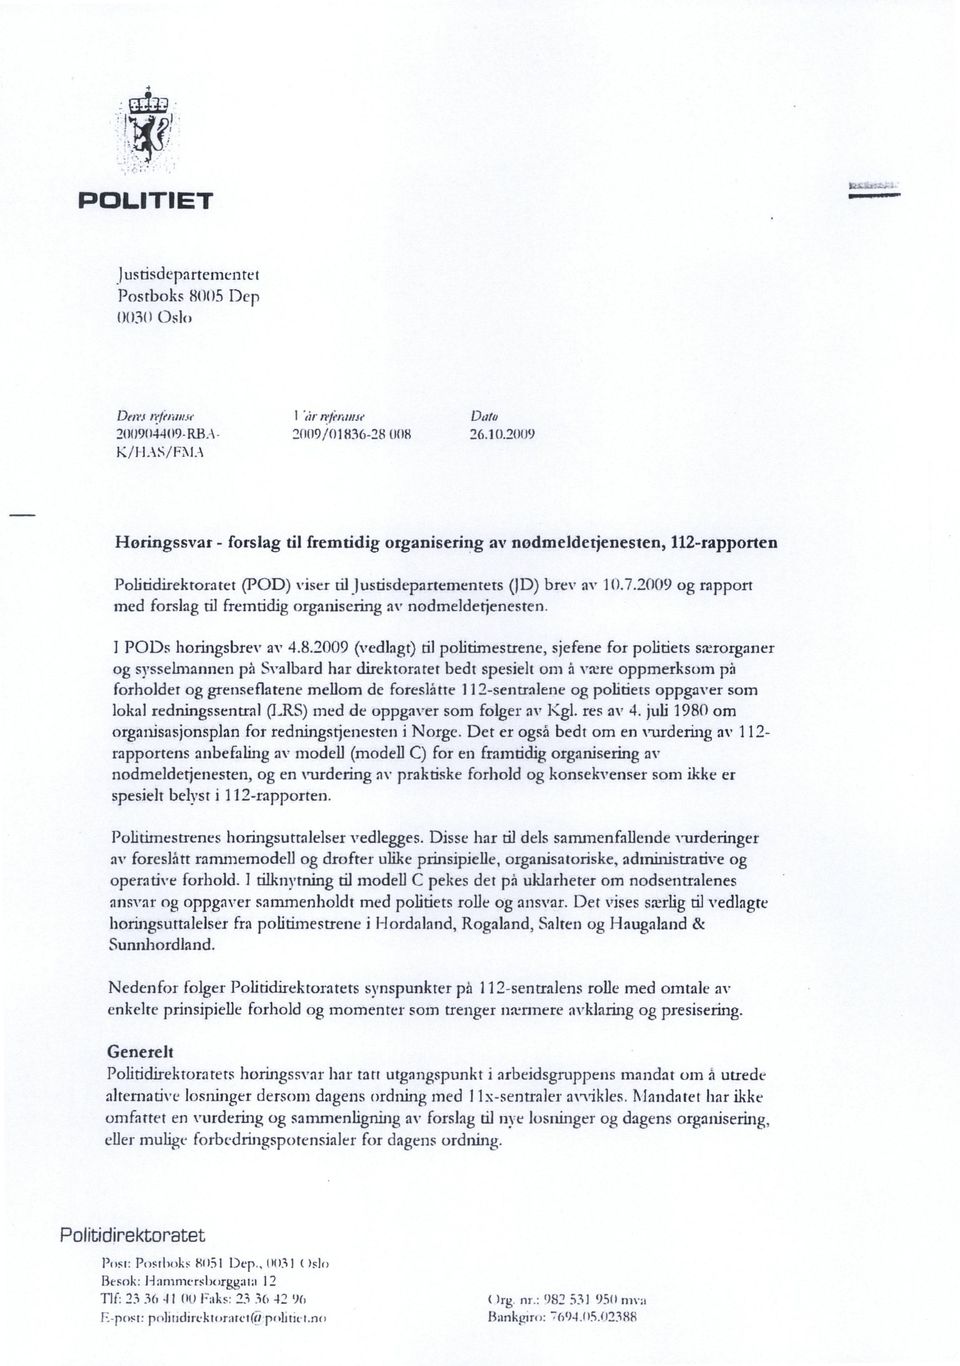 2009 og rapport med forslag til fremtidig organisering av nodmelderjenesten. I P011s horingsbrev av 4.8.